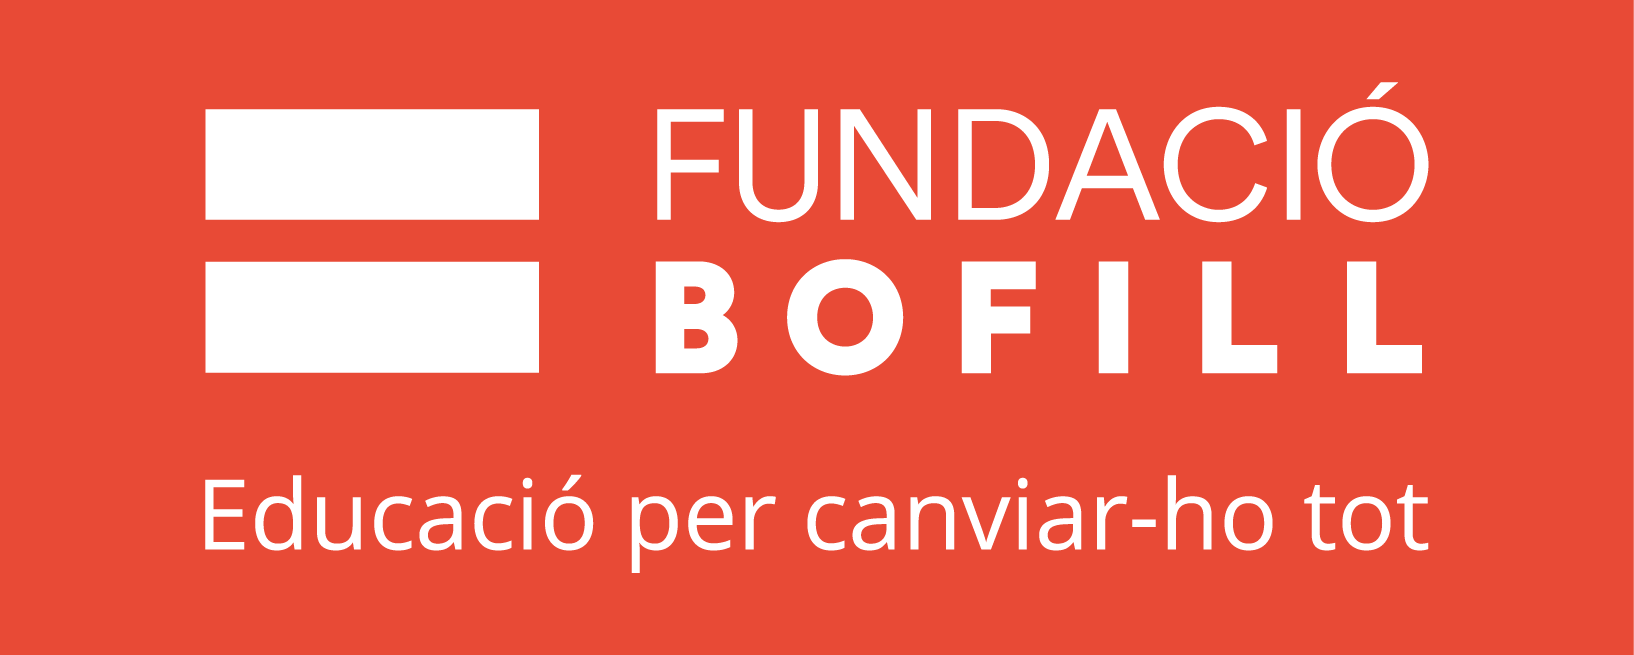 Fundació Bofill